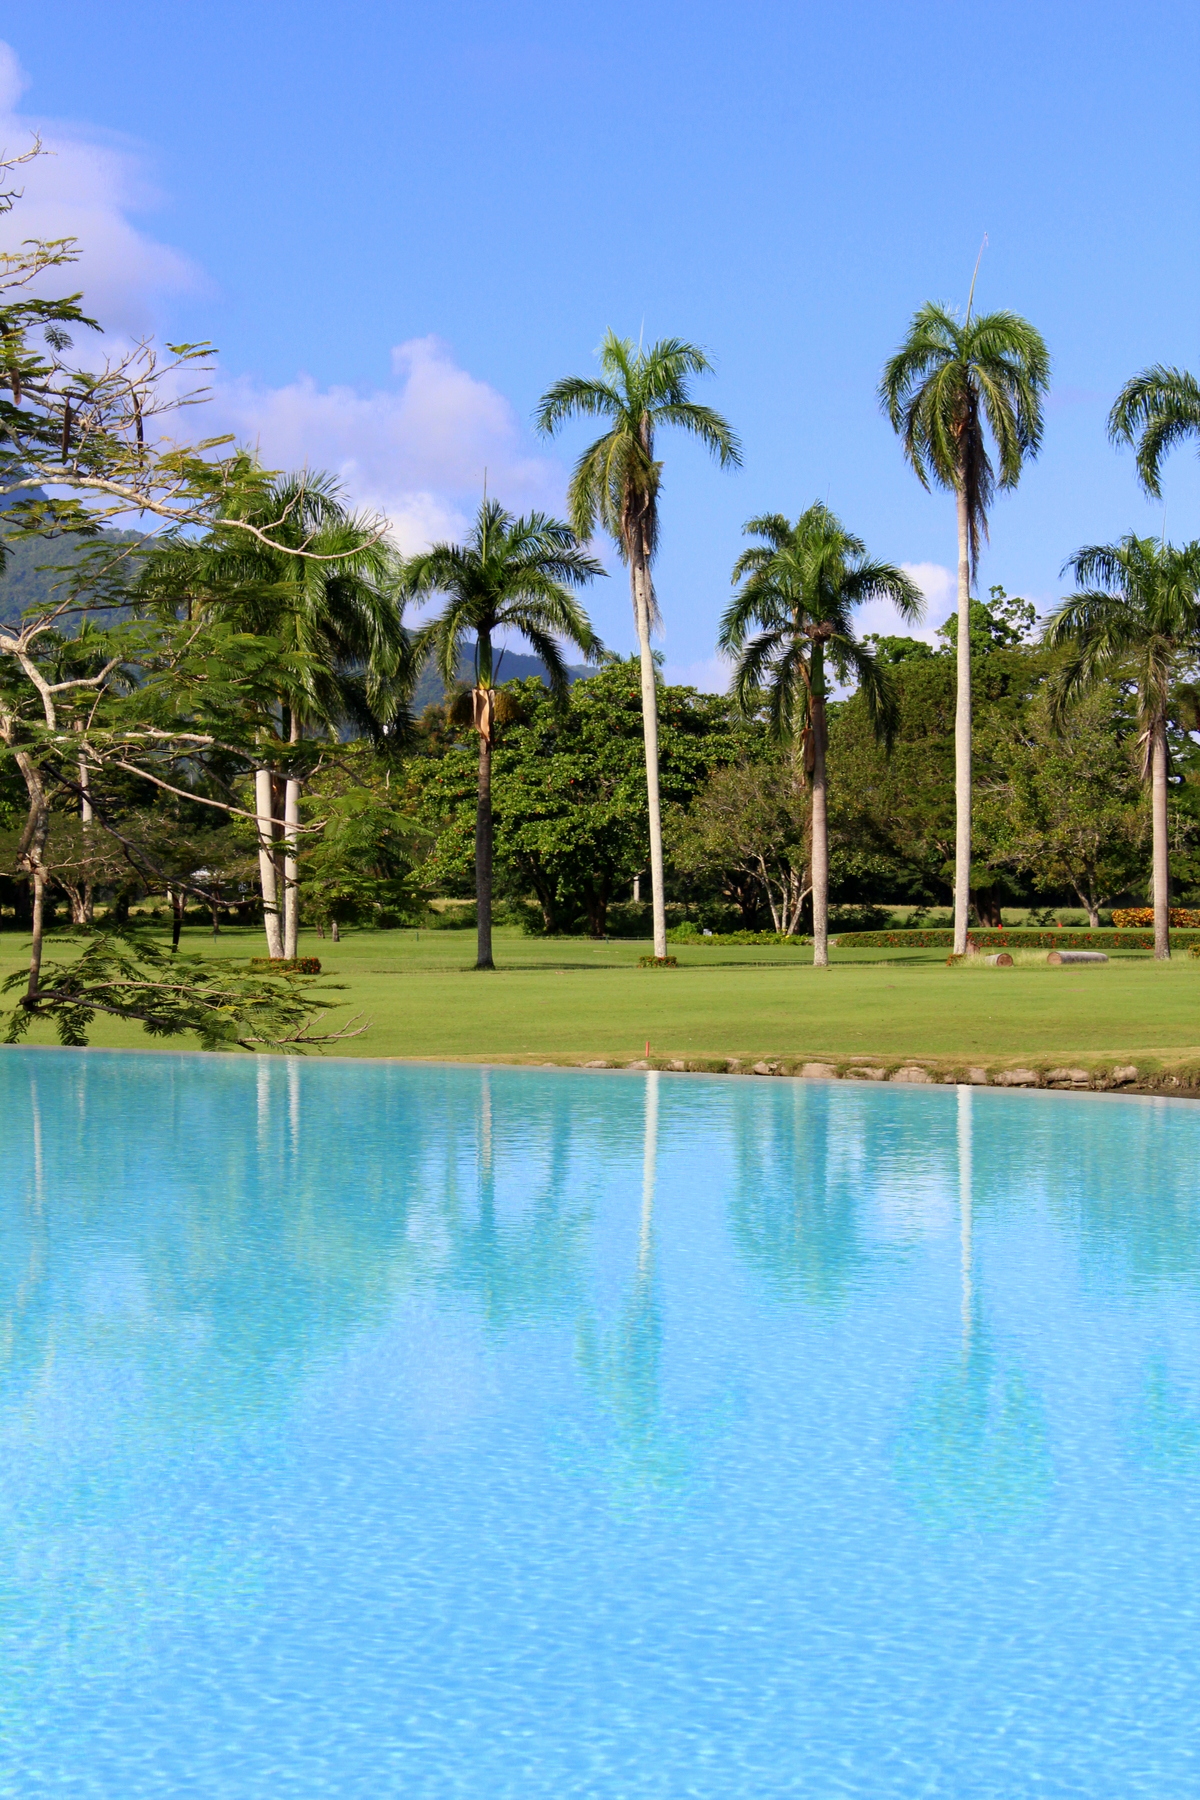 VH Atmosphere seleccionado entre 10 mejores hoteles en el Caribe